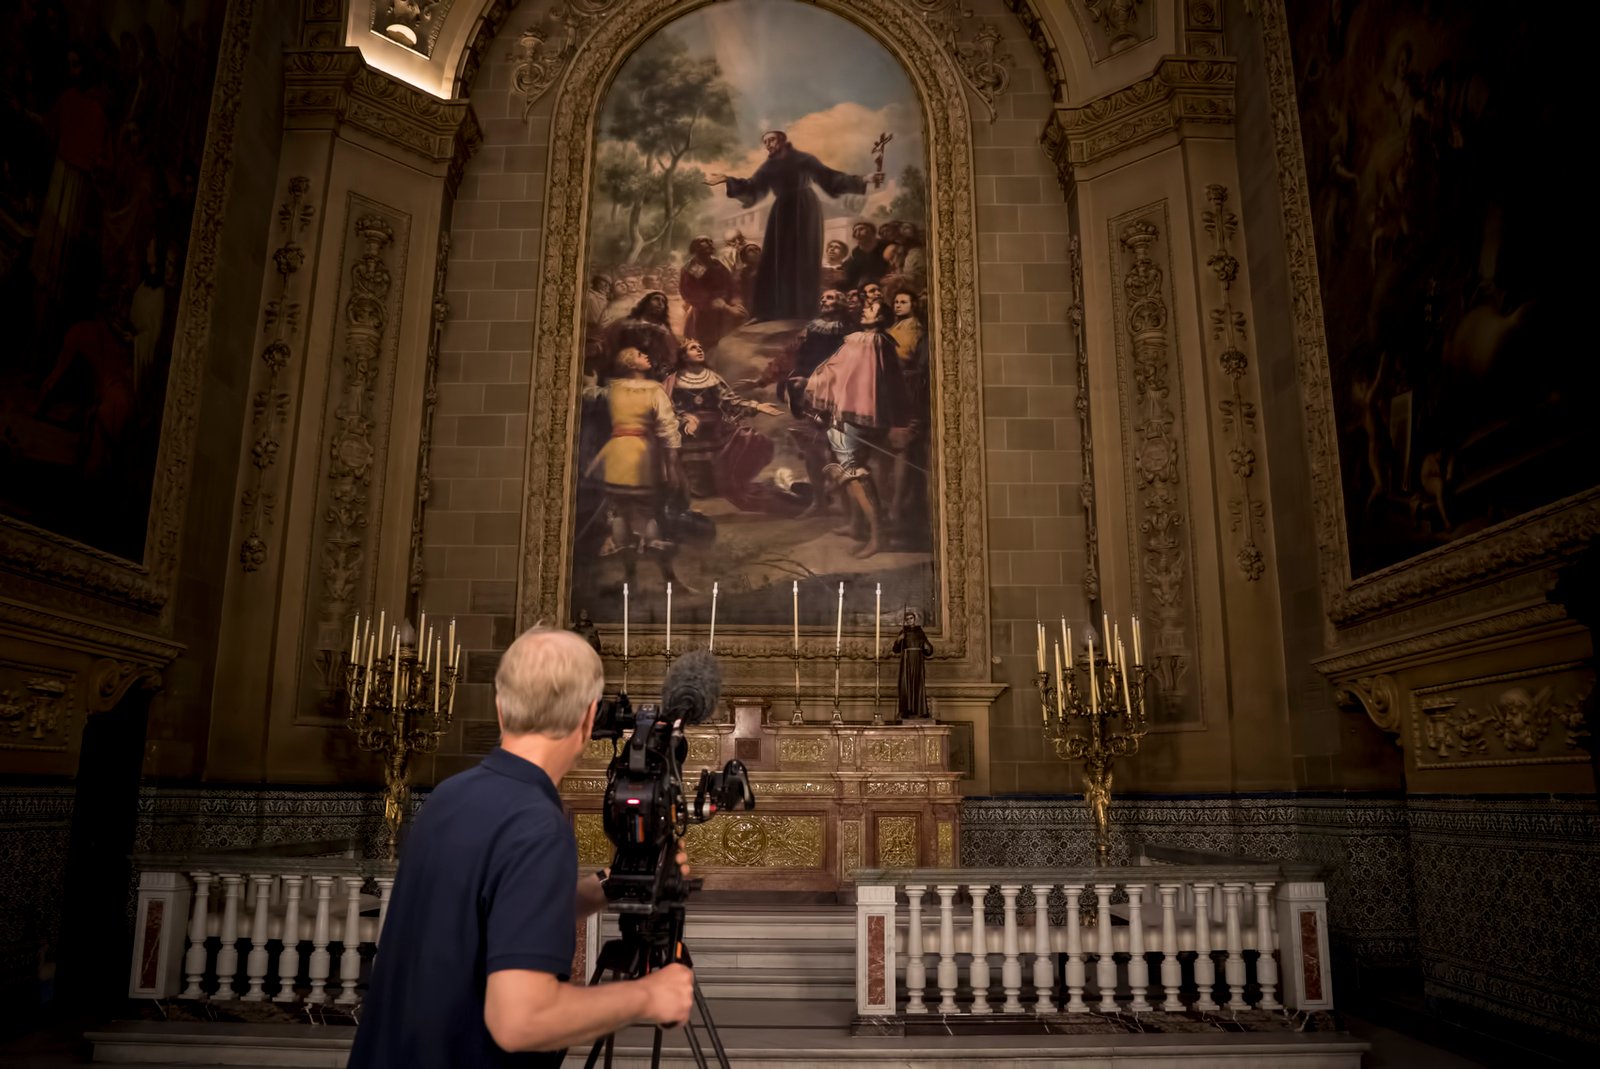 Rodando en la Basílica de San Francisco el Grande de Madrid. Productions David Bickerstaff.